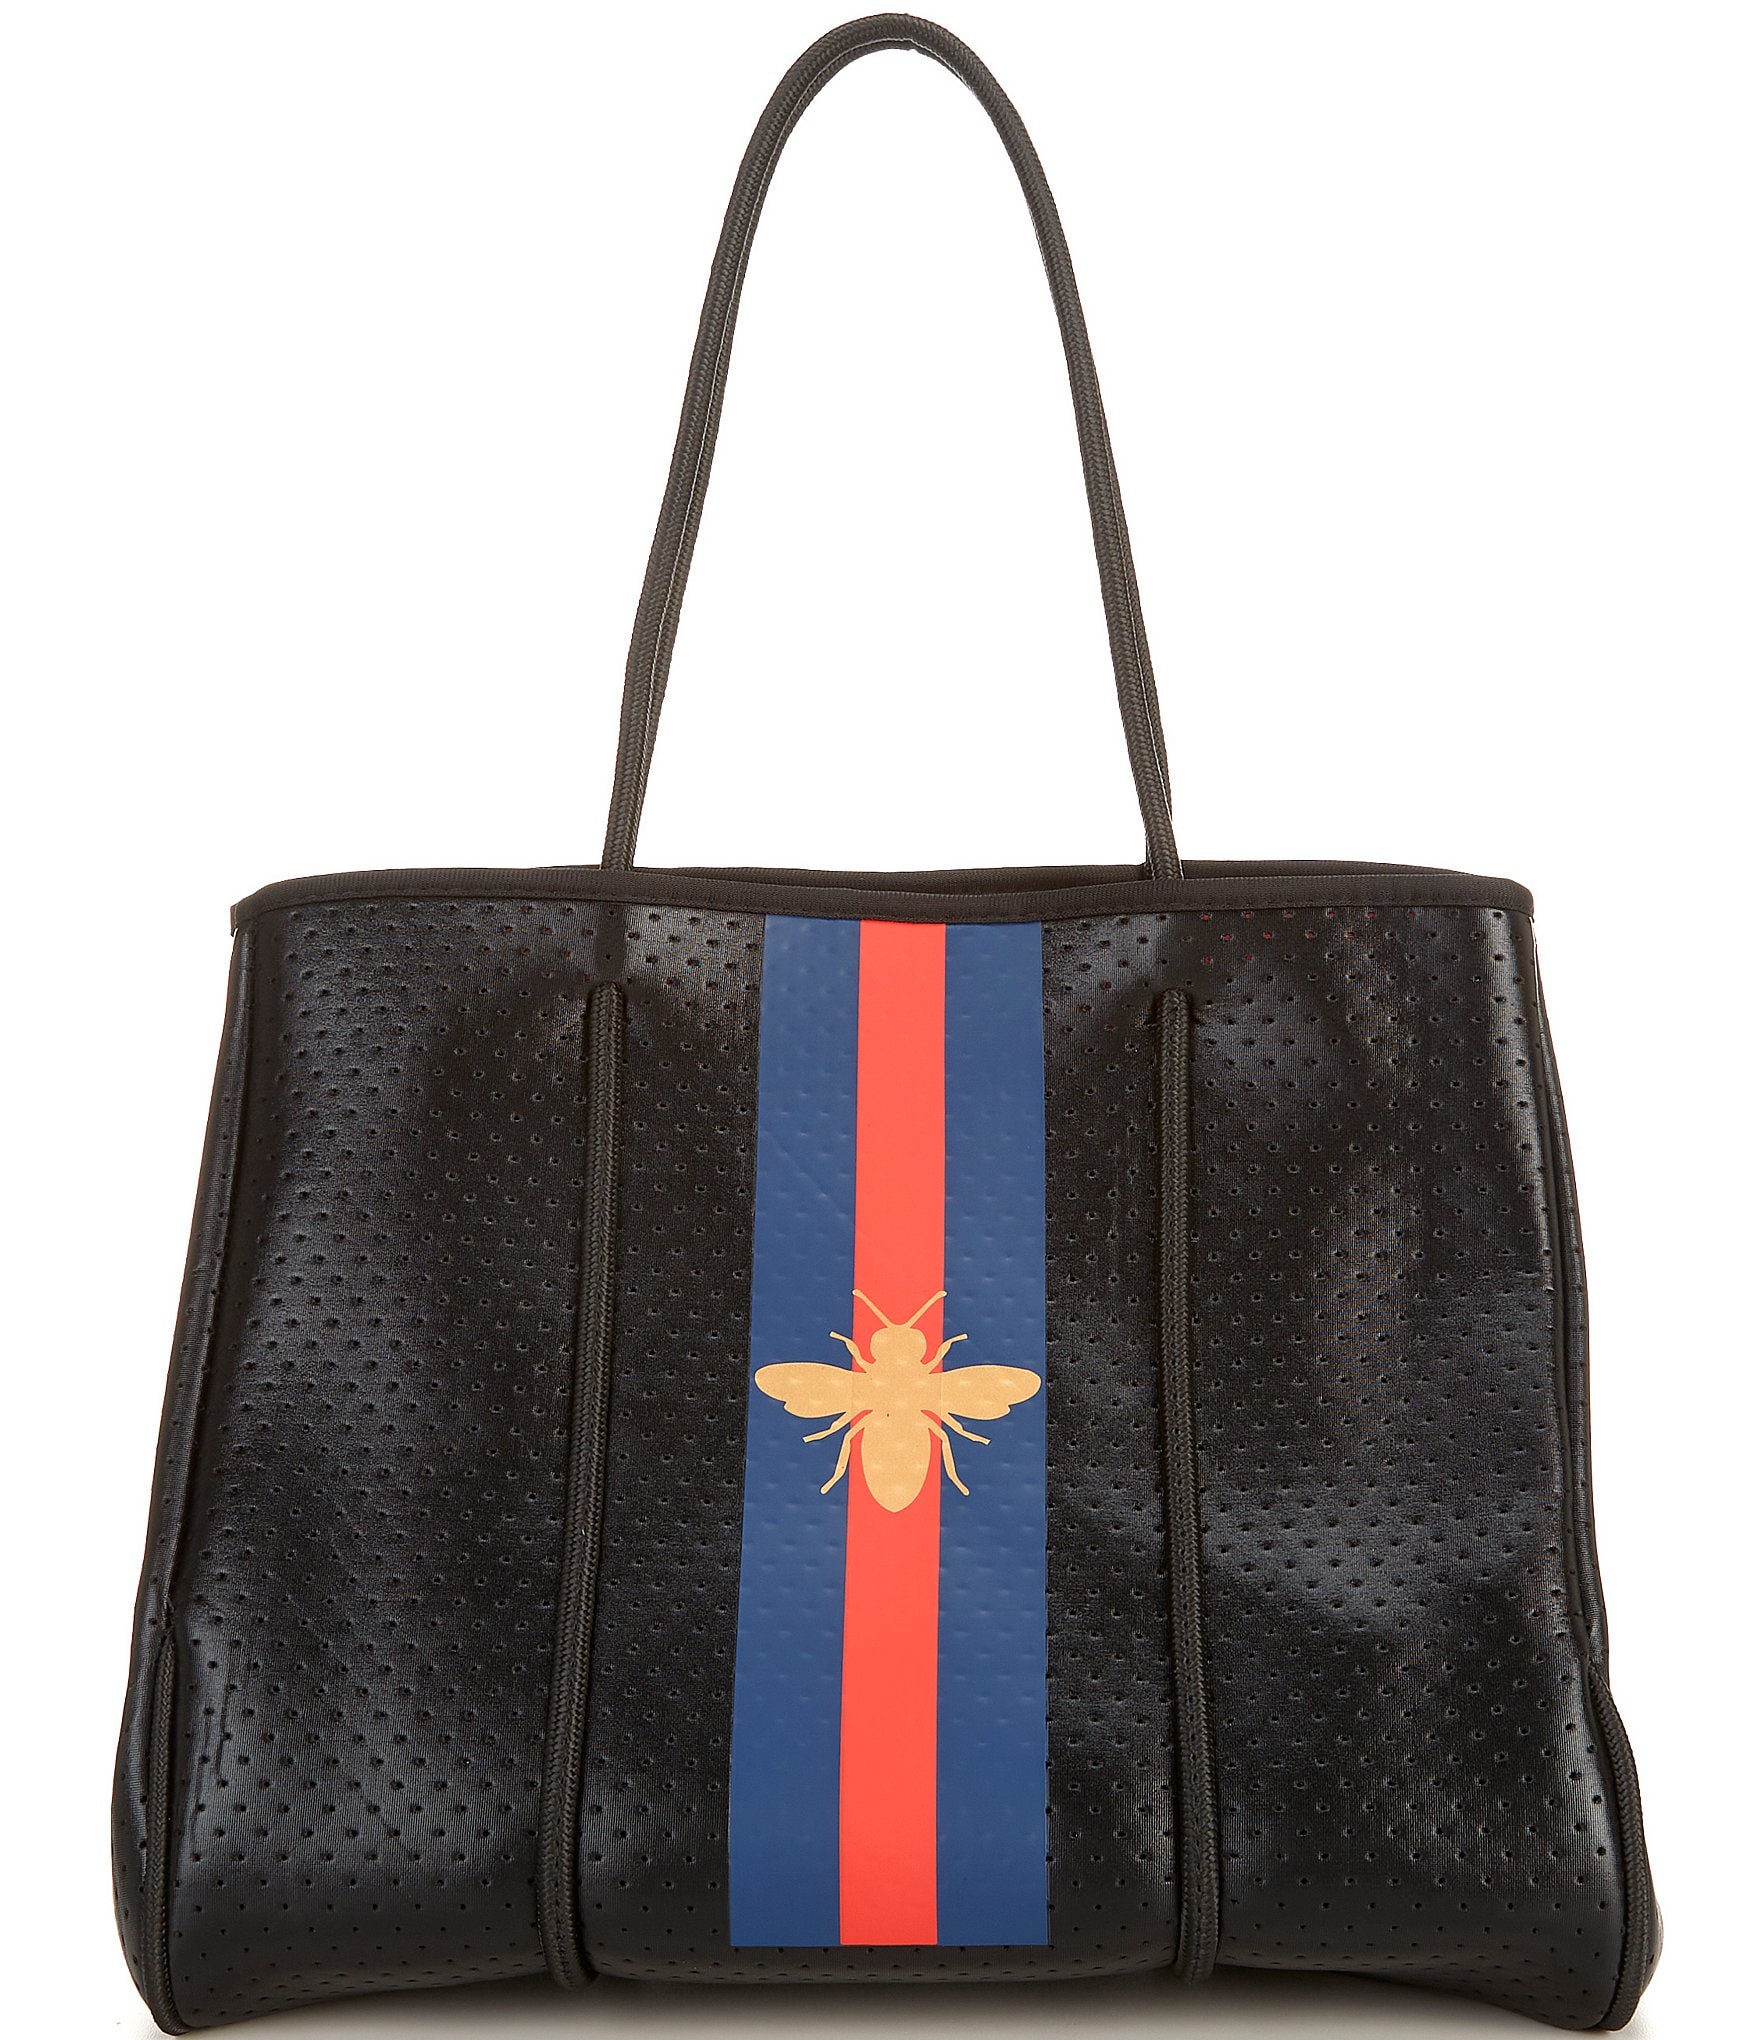 Crossbody Bags For Women,Neoprene Bag,Messenger Bag by IBEE 